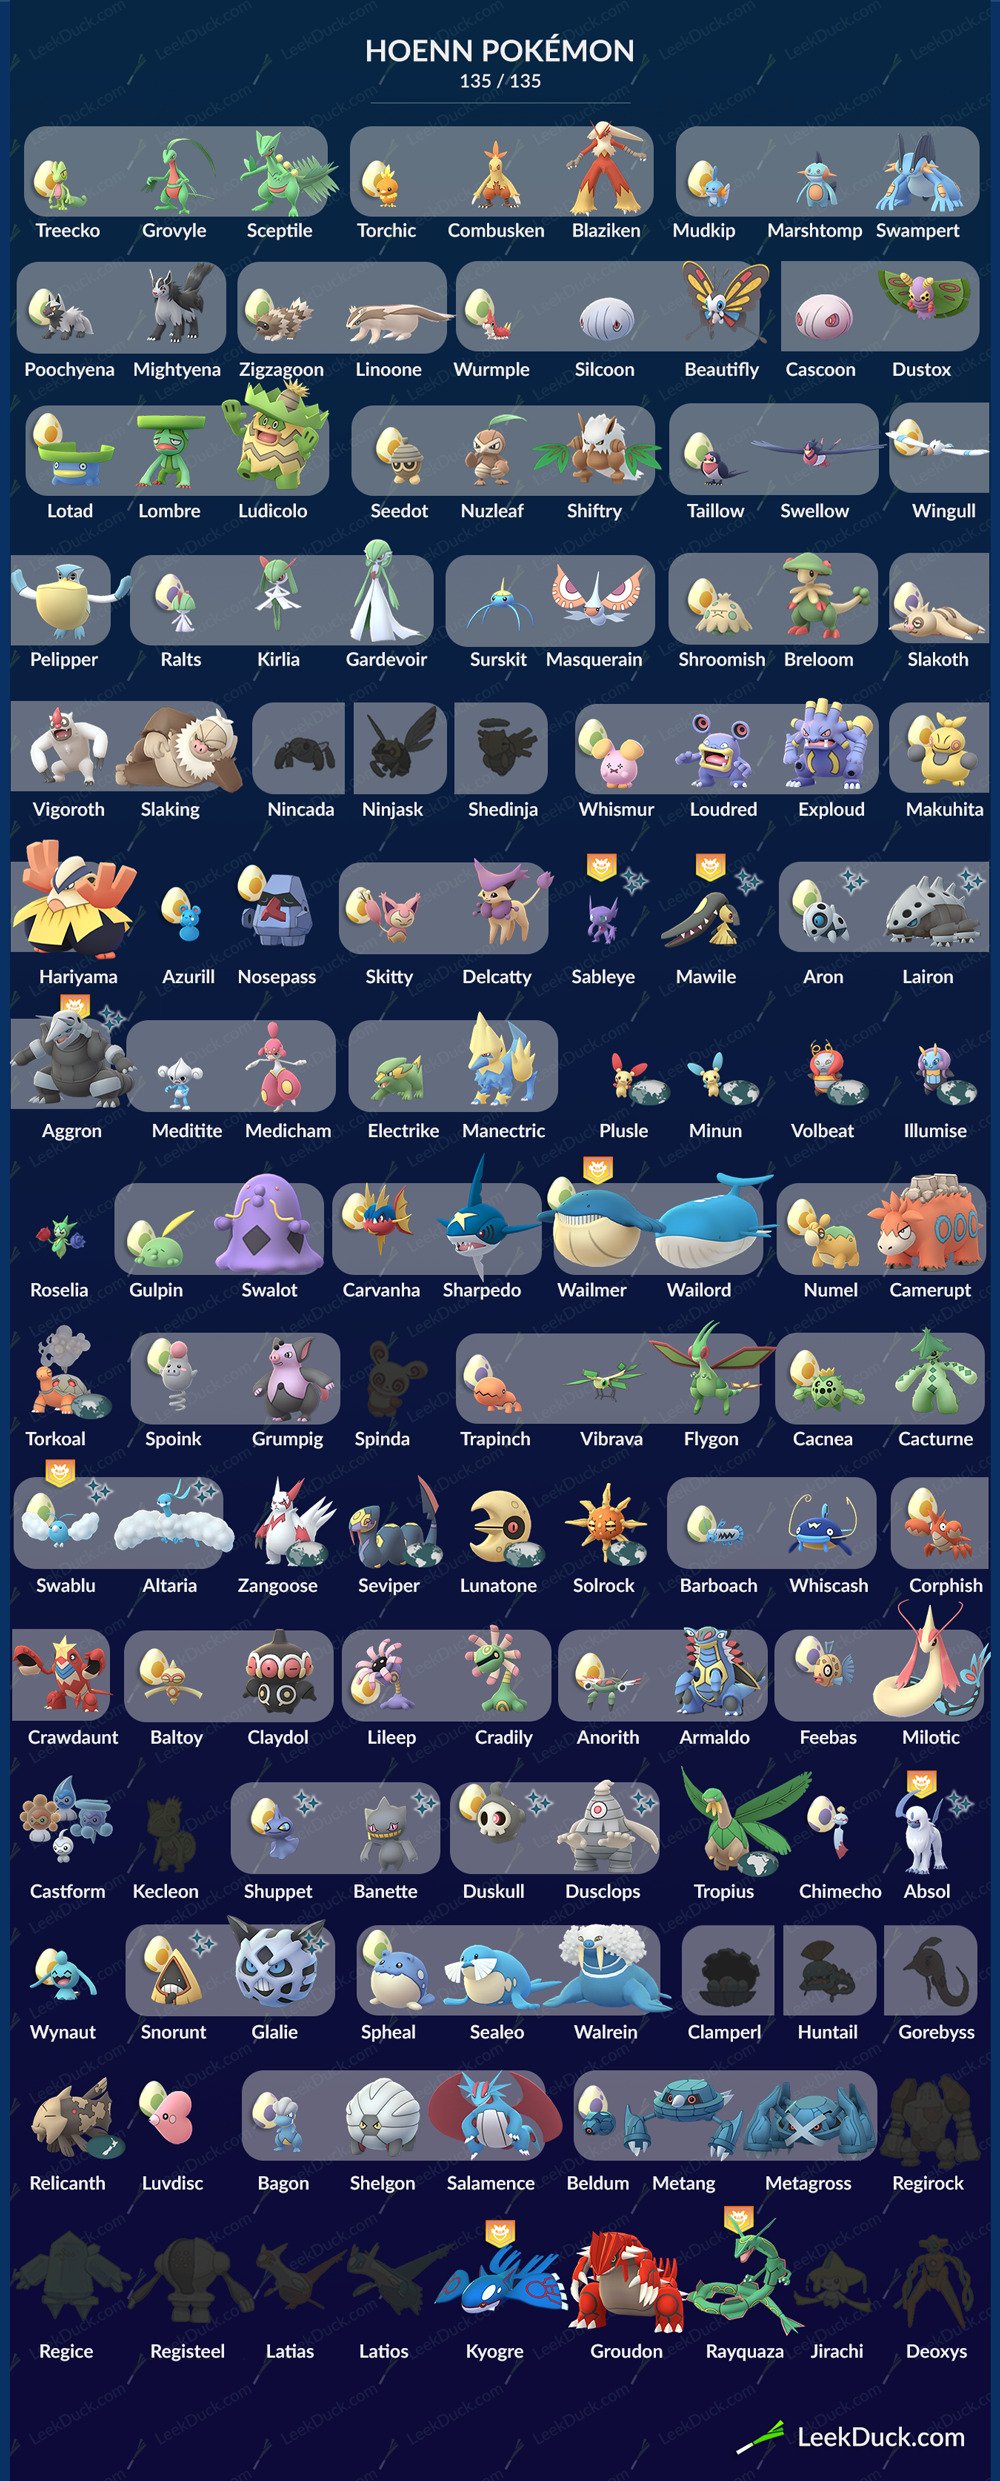 Tutti i Pokémon di terza generazione che possiamo catturare in Pokémon GO